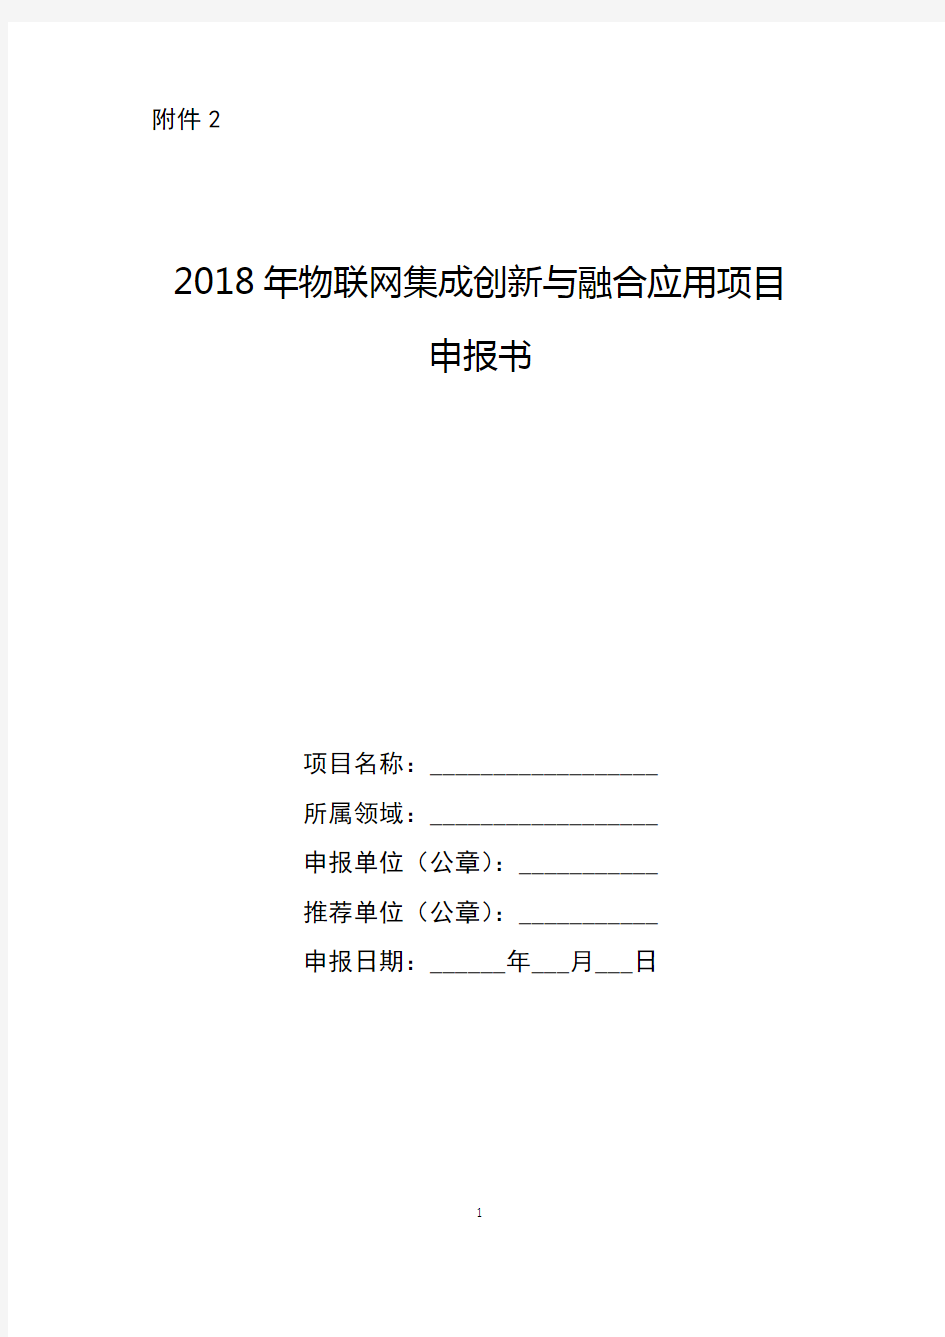 2018年物联网集成创新与融合应用项目申报书